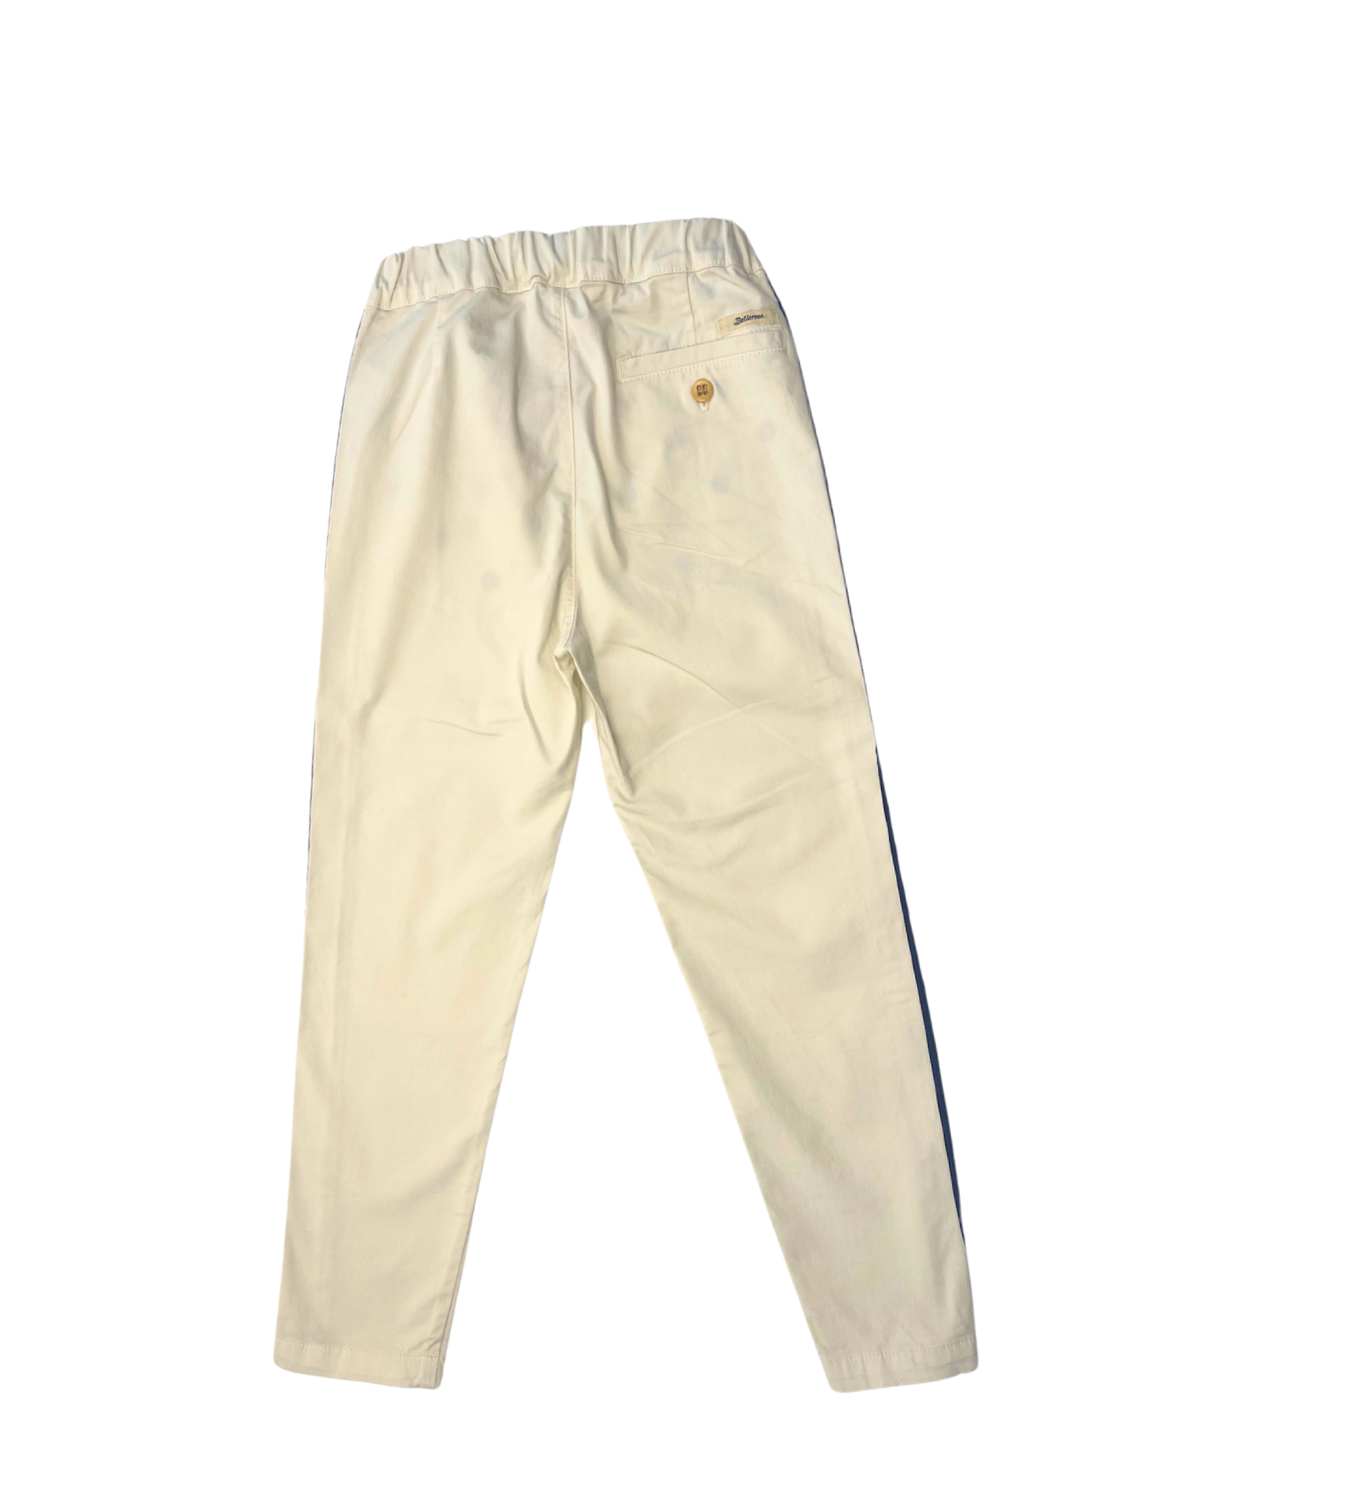 BELLEROSE - Pantalon beige détail bande camel - 6 ans